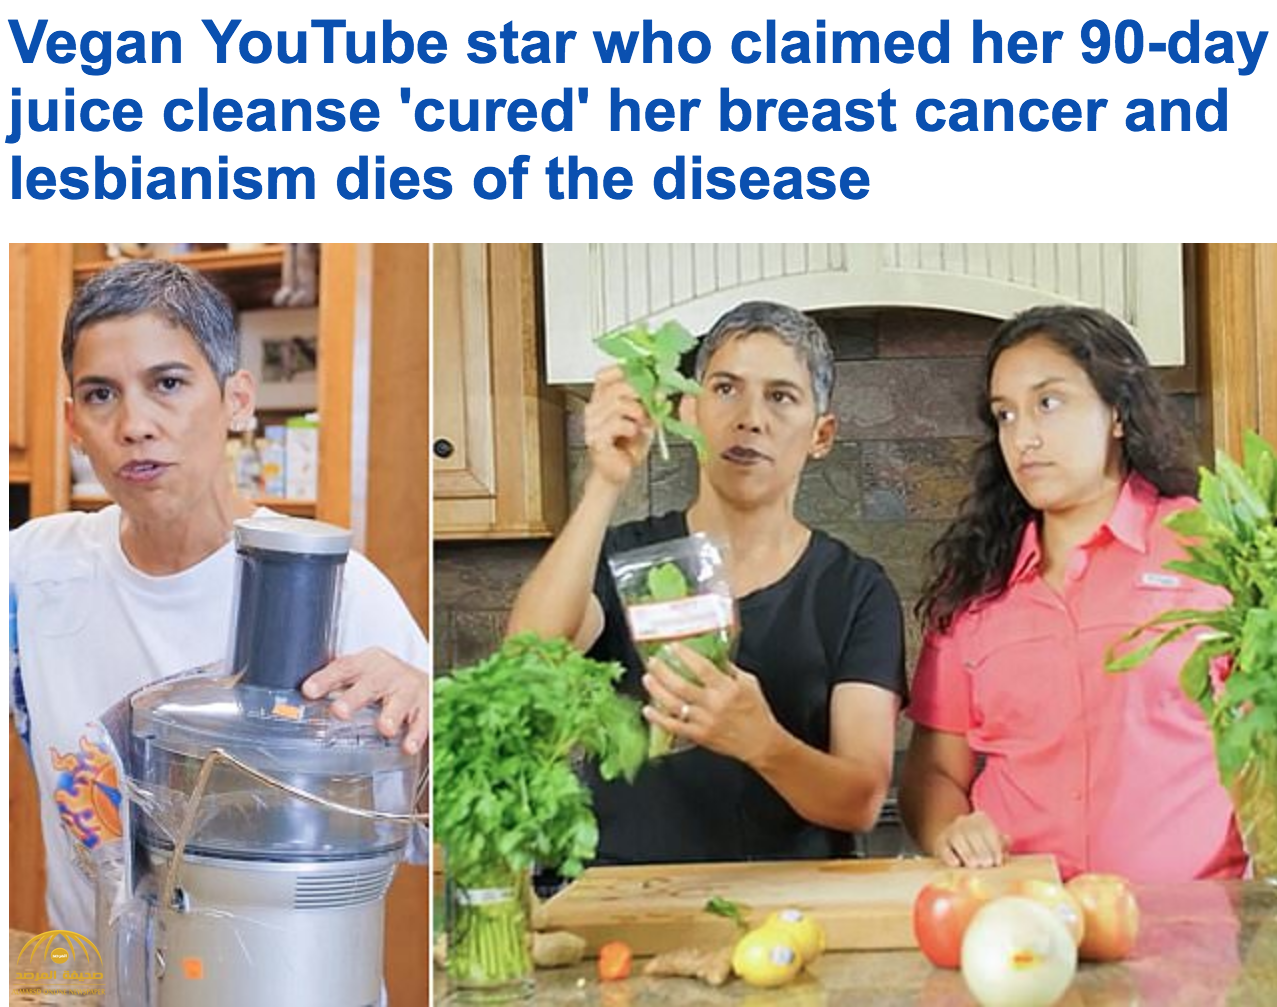 إحدى مشاهير "يوتيوب" تروج لـ "عصير سحري" تزعم أنه يشفي من السرطان وتموت بنفس المرض !